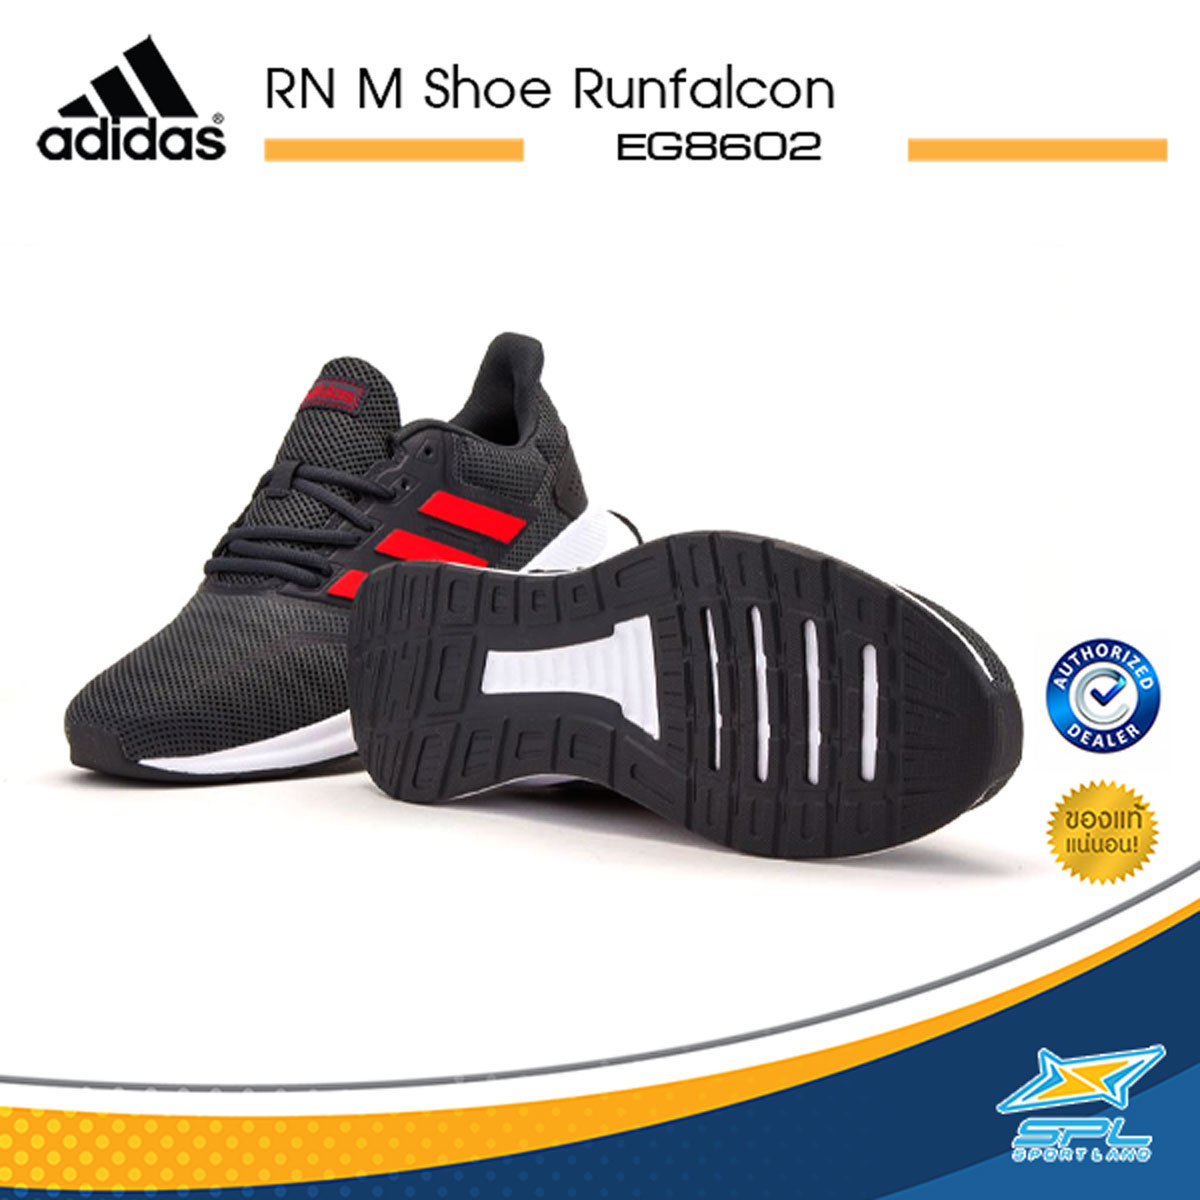 Adidas รองเท้าวิ่ง รองเท้าผู้ชาย รองเท้าออกกำลังกาย อาดิดาส Running Man Shoe Runfalcon EG8602 (2000) สี ดำ ไซส์ EU 39 สี ดำไซส์ EU 39